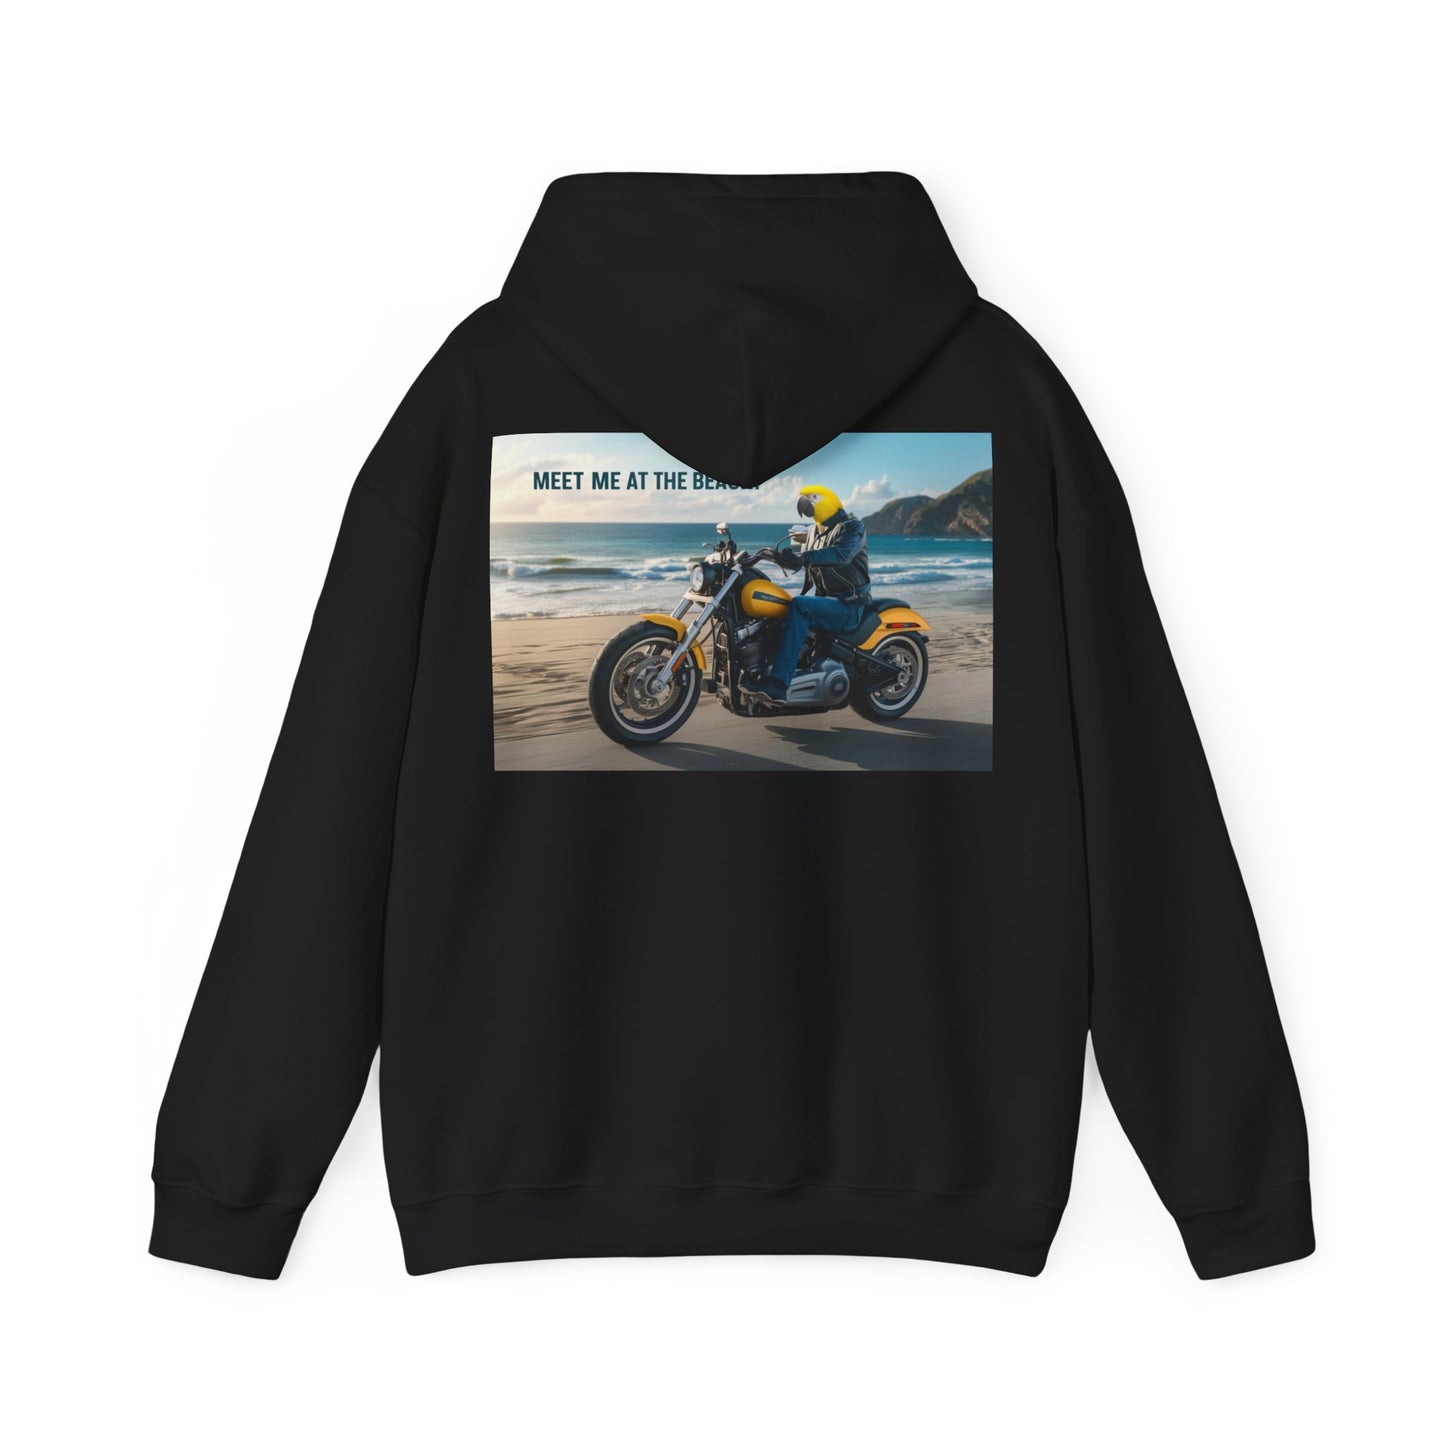 Meet me at the Beach Motorcycle - Hoodie